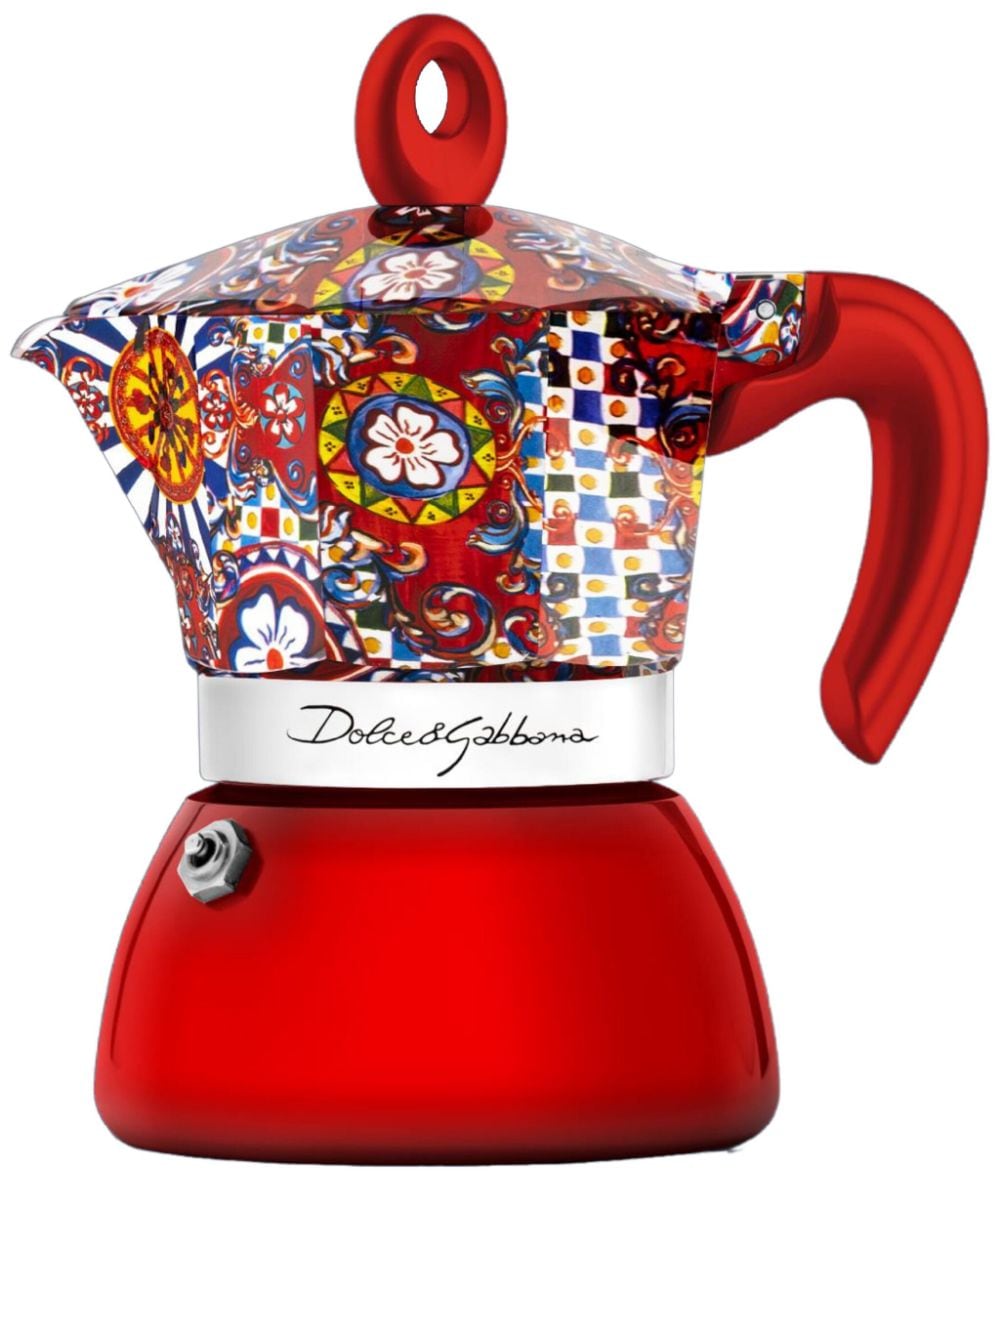 Dolce & Gabbana X Bialetti Moka Induction Kaffeekocher 2 Tassen In Red